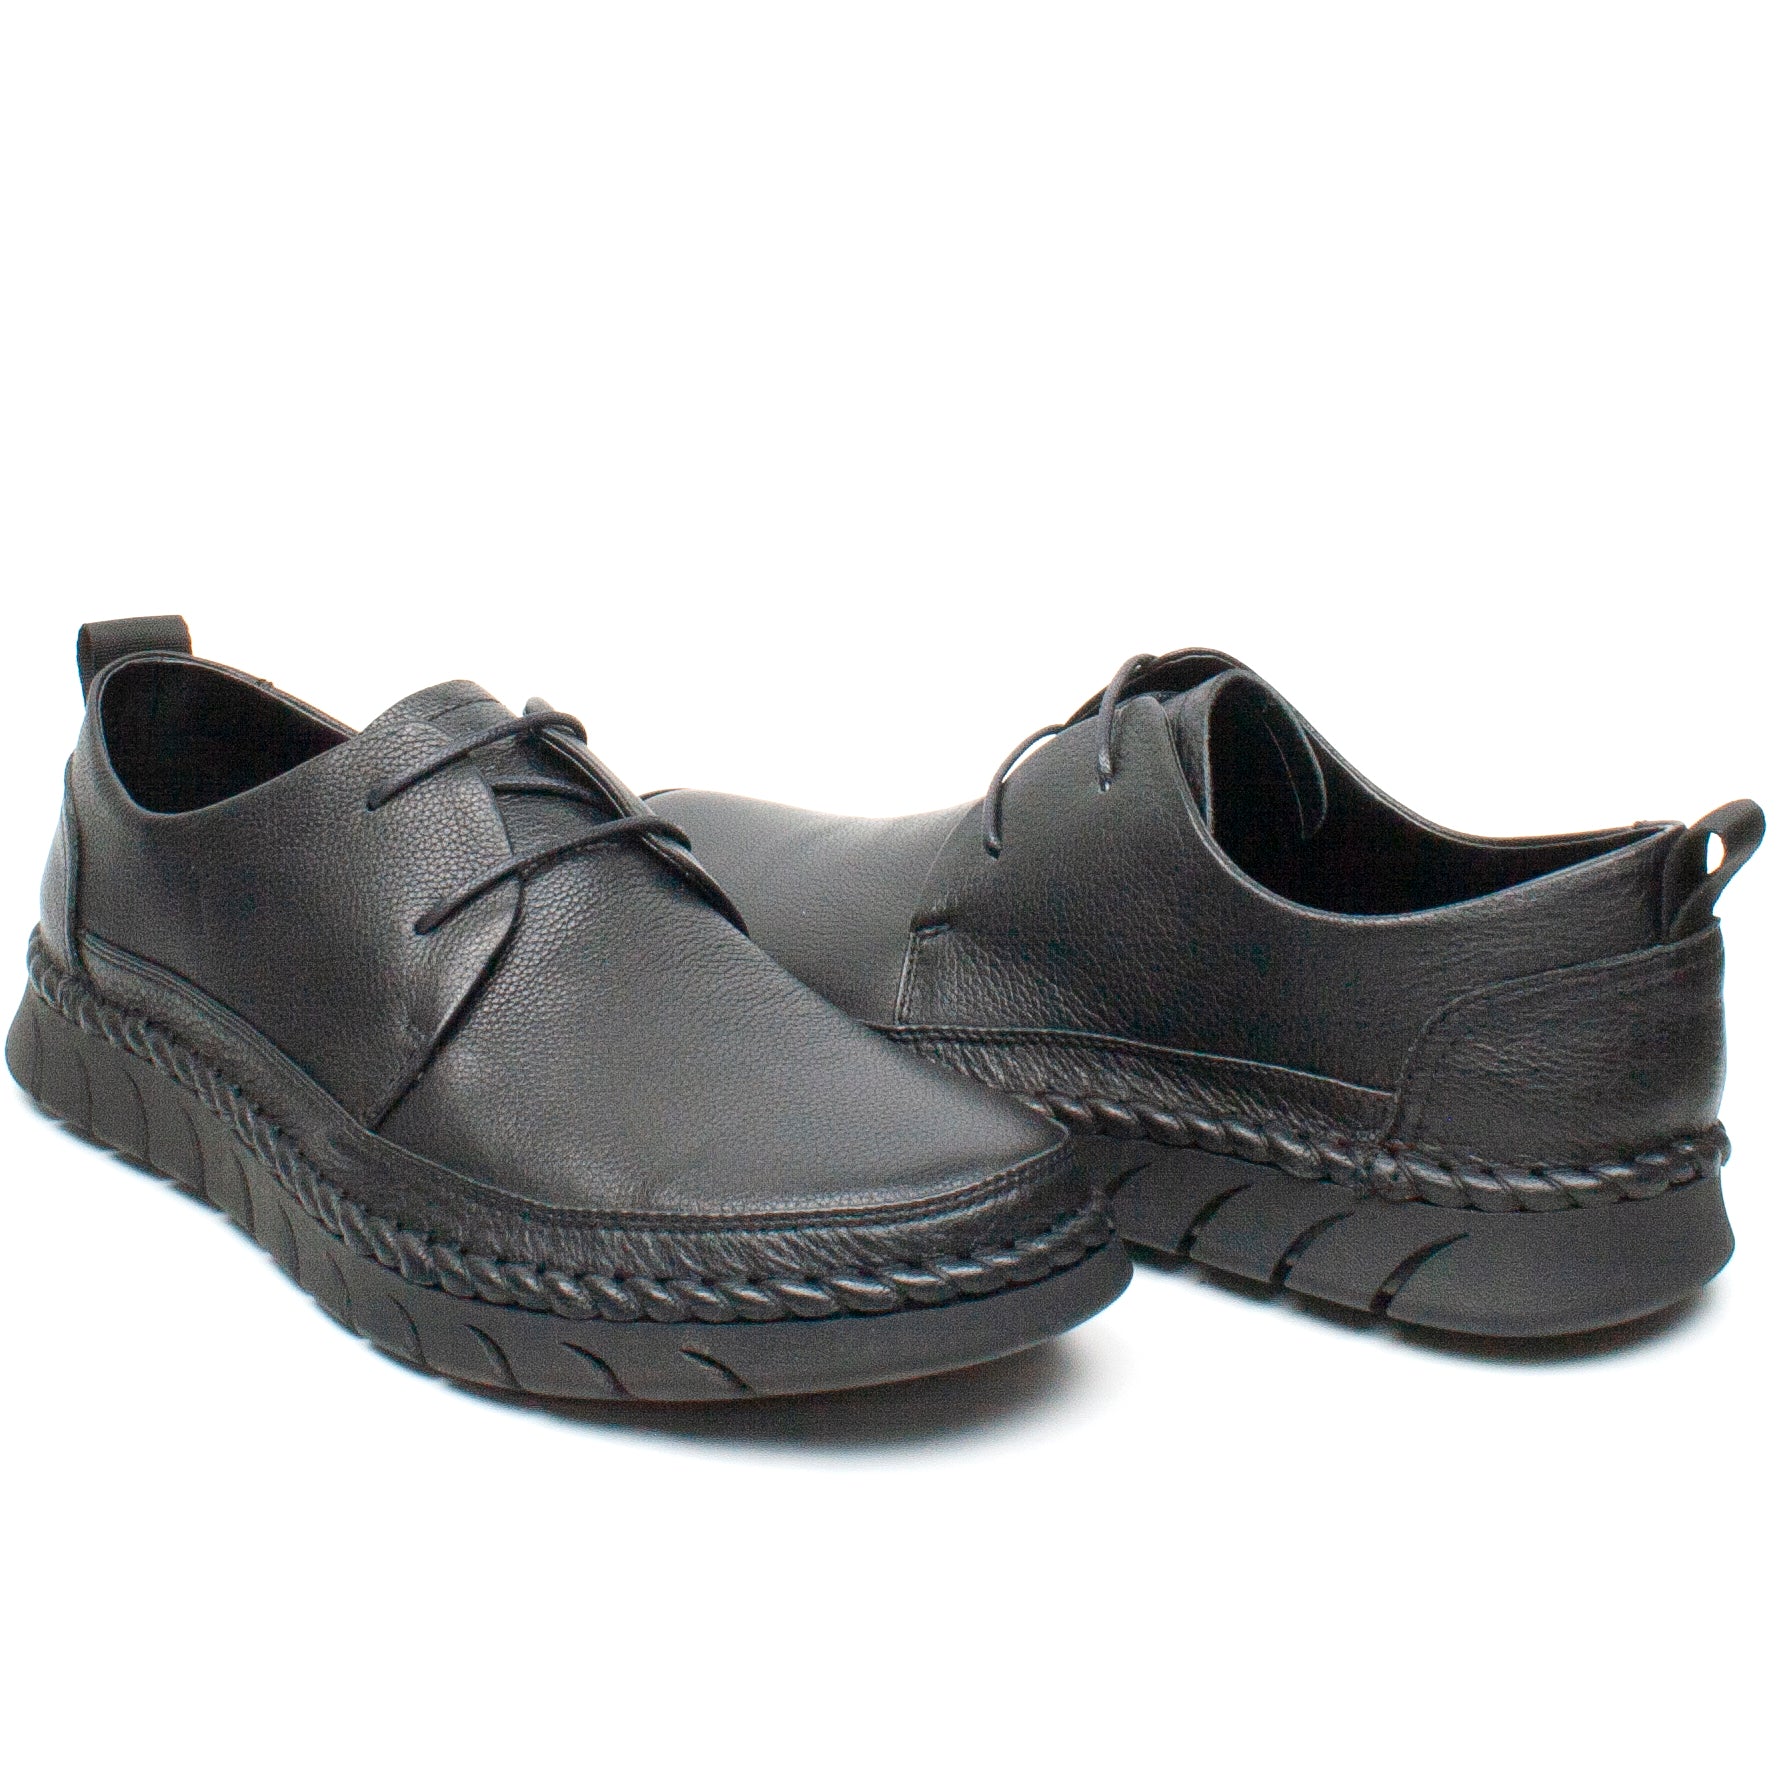 Mels Pantofi barbati HT8216 negru IB2284-NG